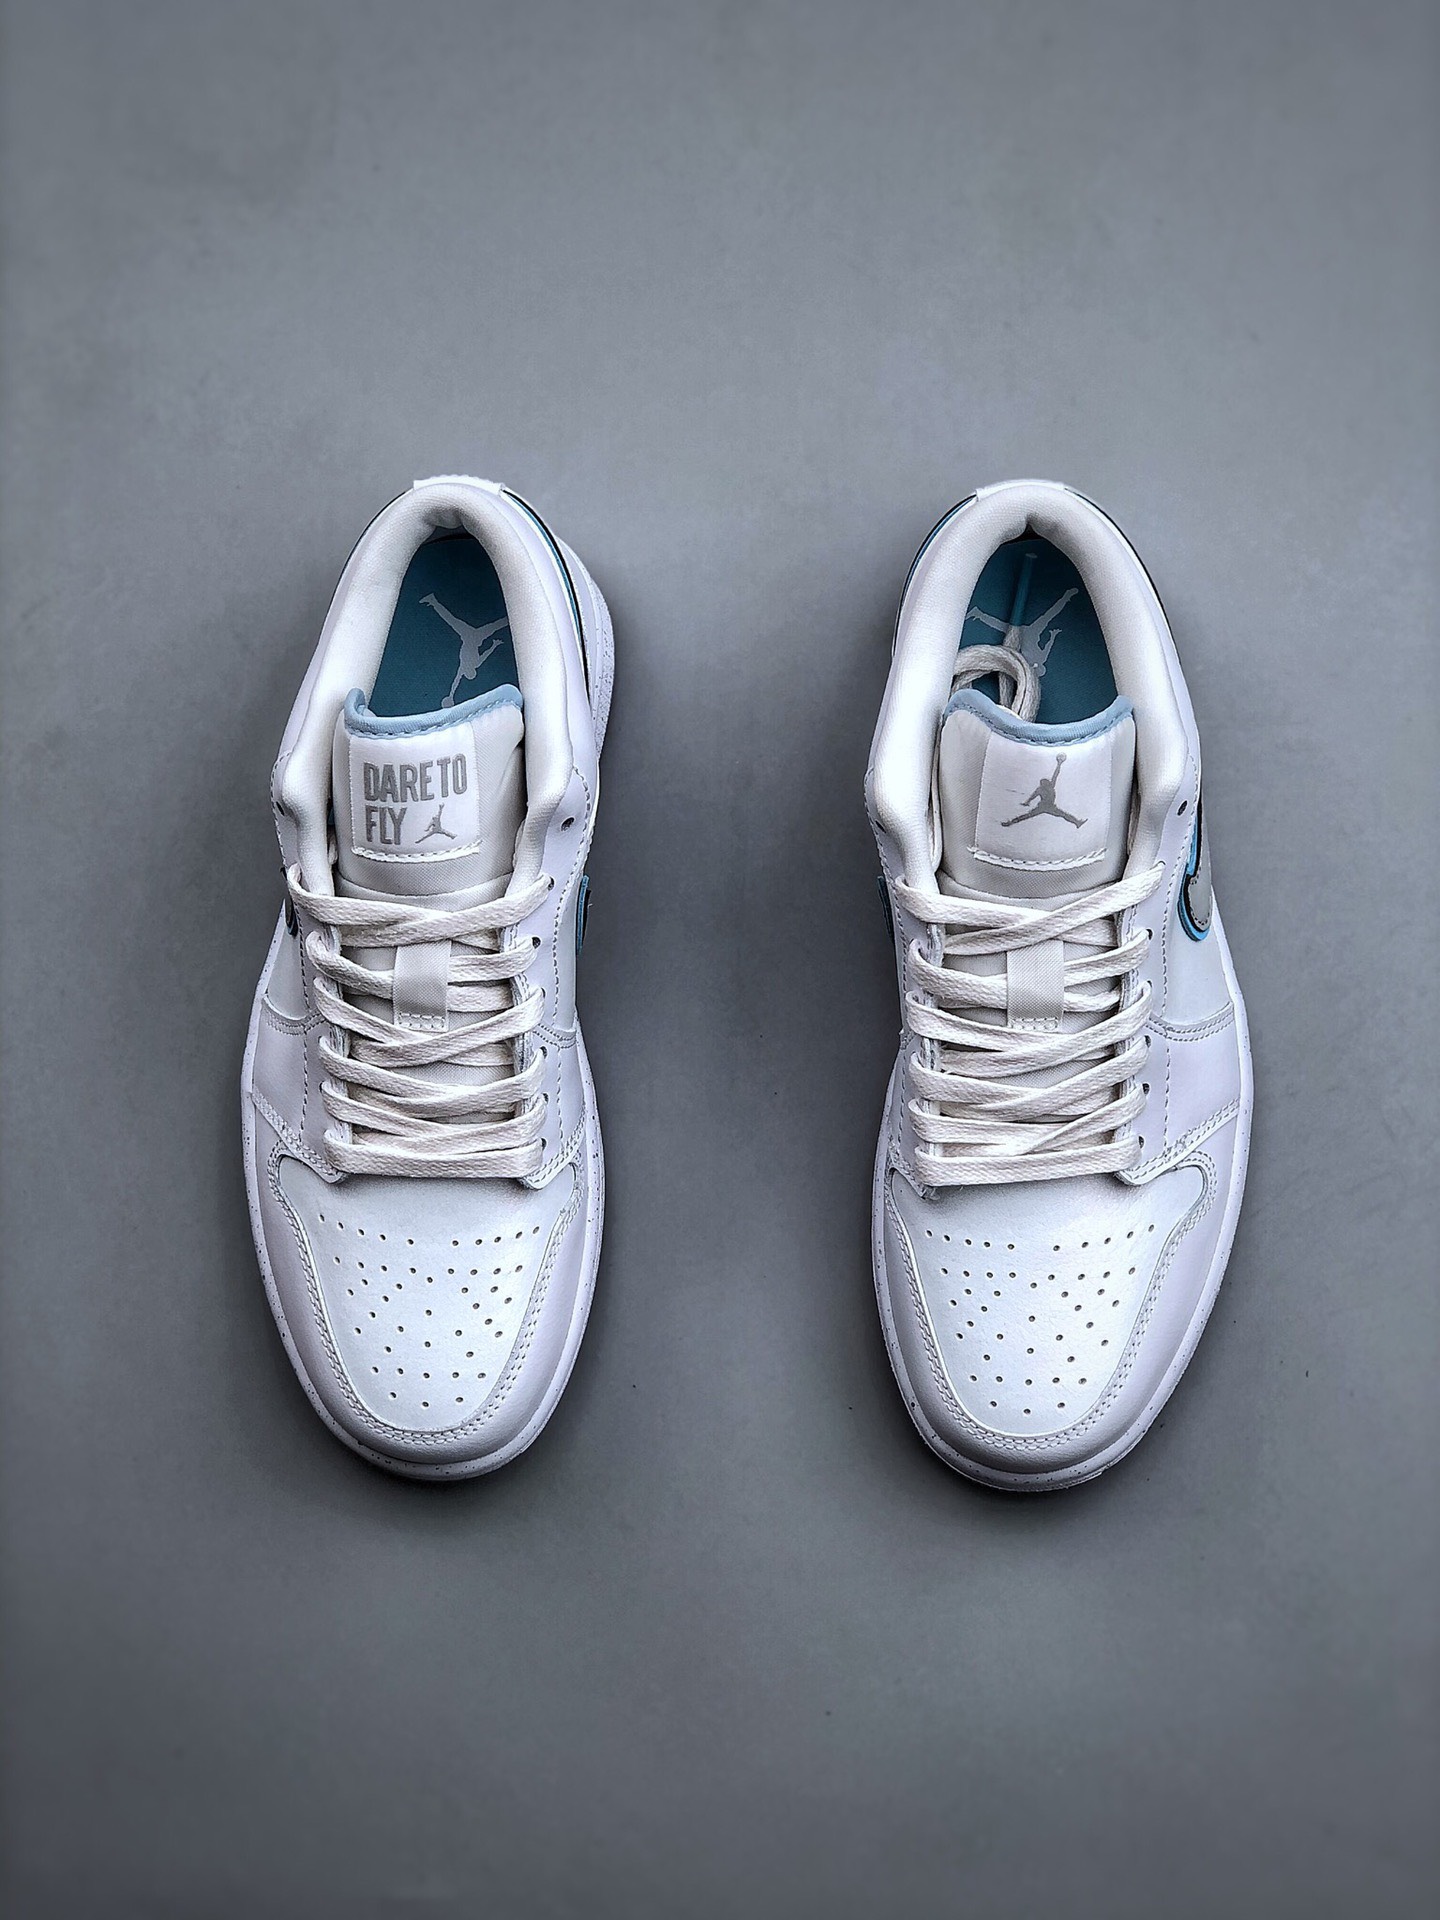 Giày sneaker Nam/Nữ - N1ke Air Jord4n 1 AJ1 Low  “Dare To Fly” / Size 36-44